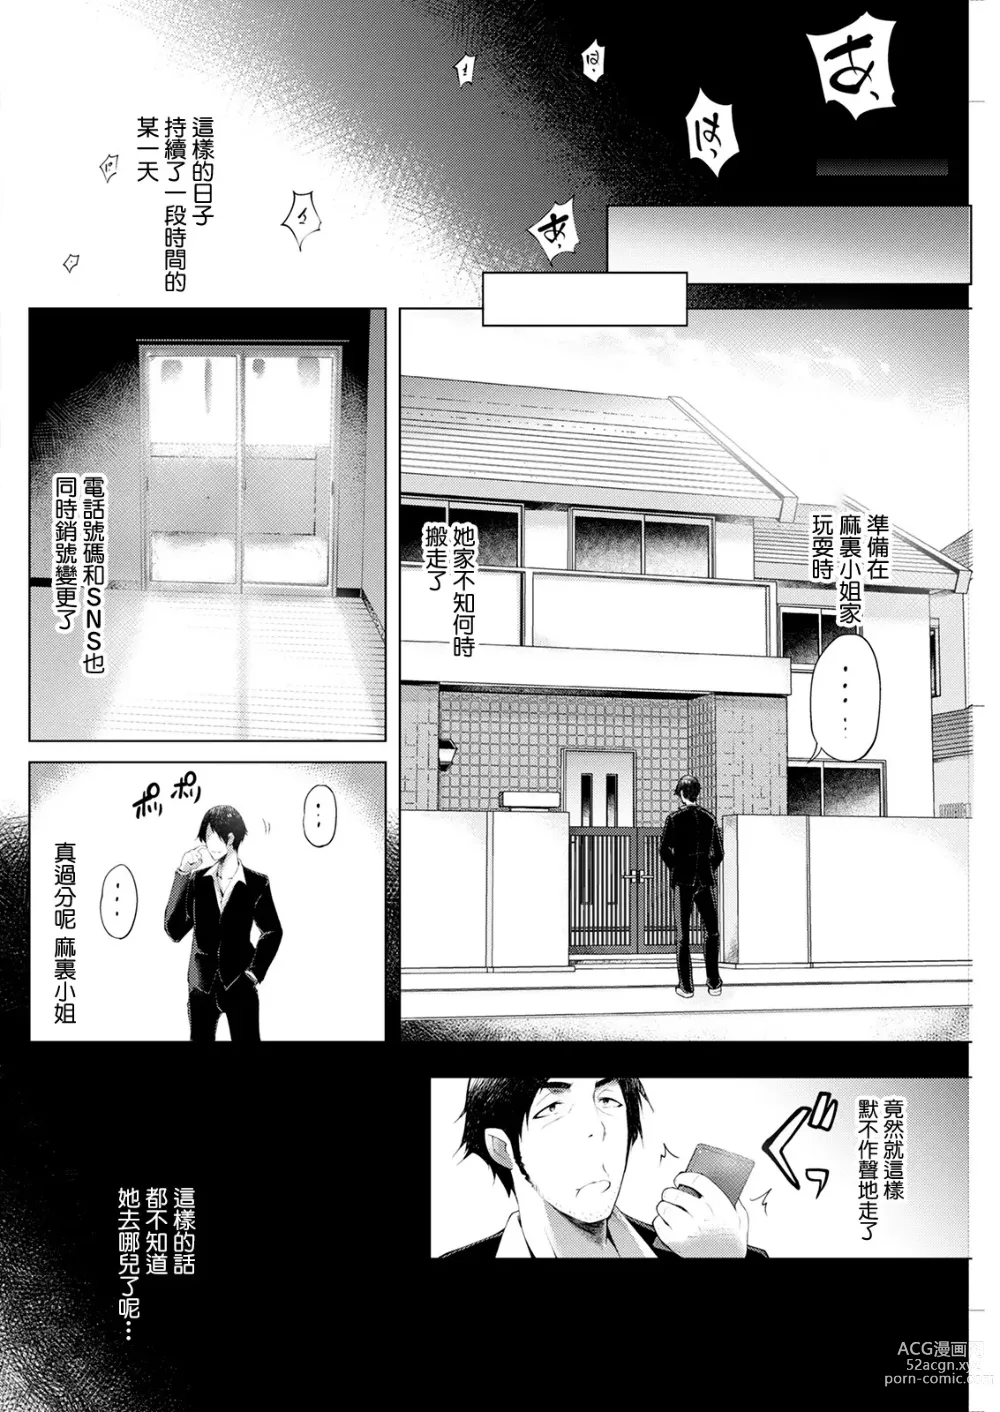 Page 16 of manga Sorekarano  Saishuuwa